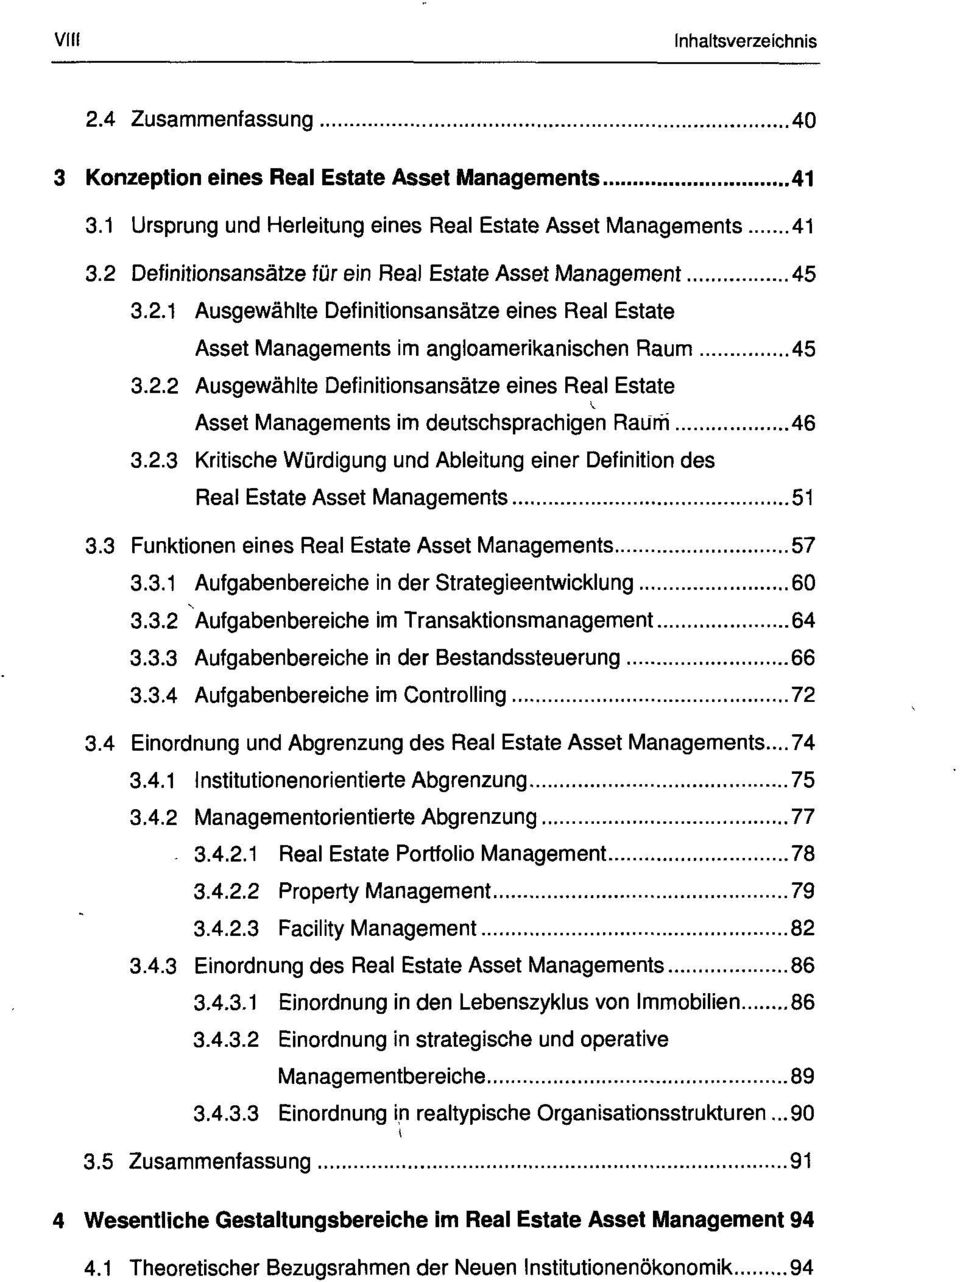 2.3 Kritische Würdigung und Ableitung einer Definition des Real Estate Asset Managements 51 3.3 Funktionen eines Real Estate Asset Managements 57 3.3.1 Aufgabenbereiche in der Strategieentwicklung 60 3.